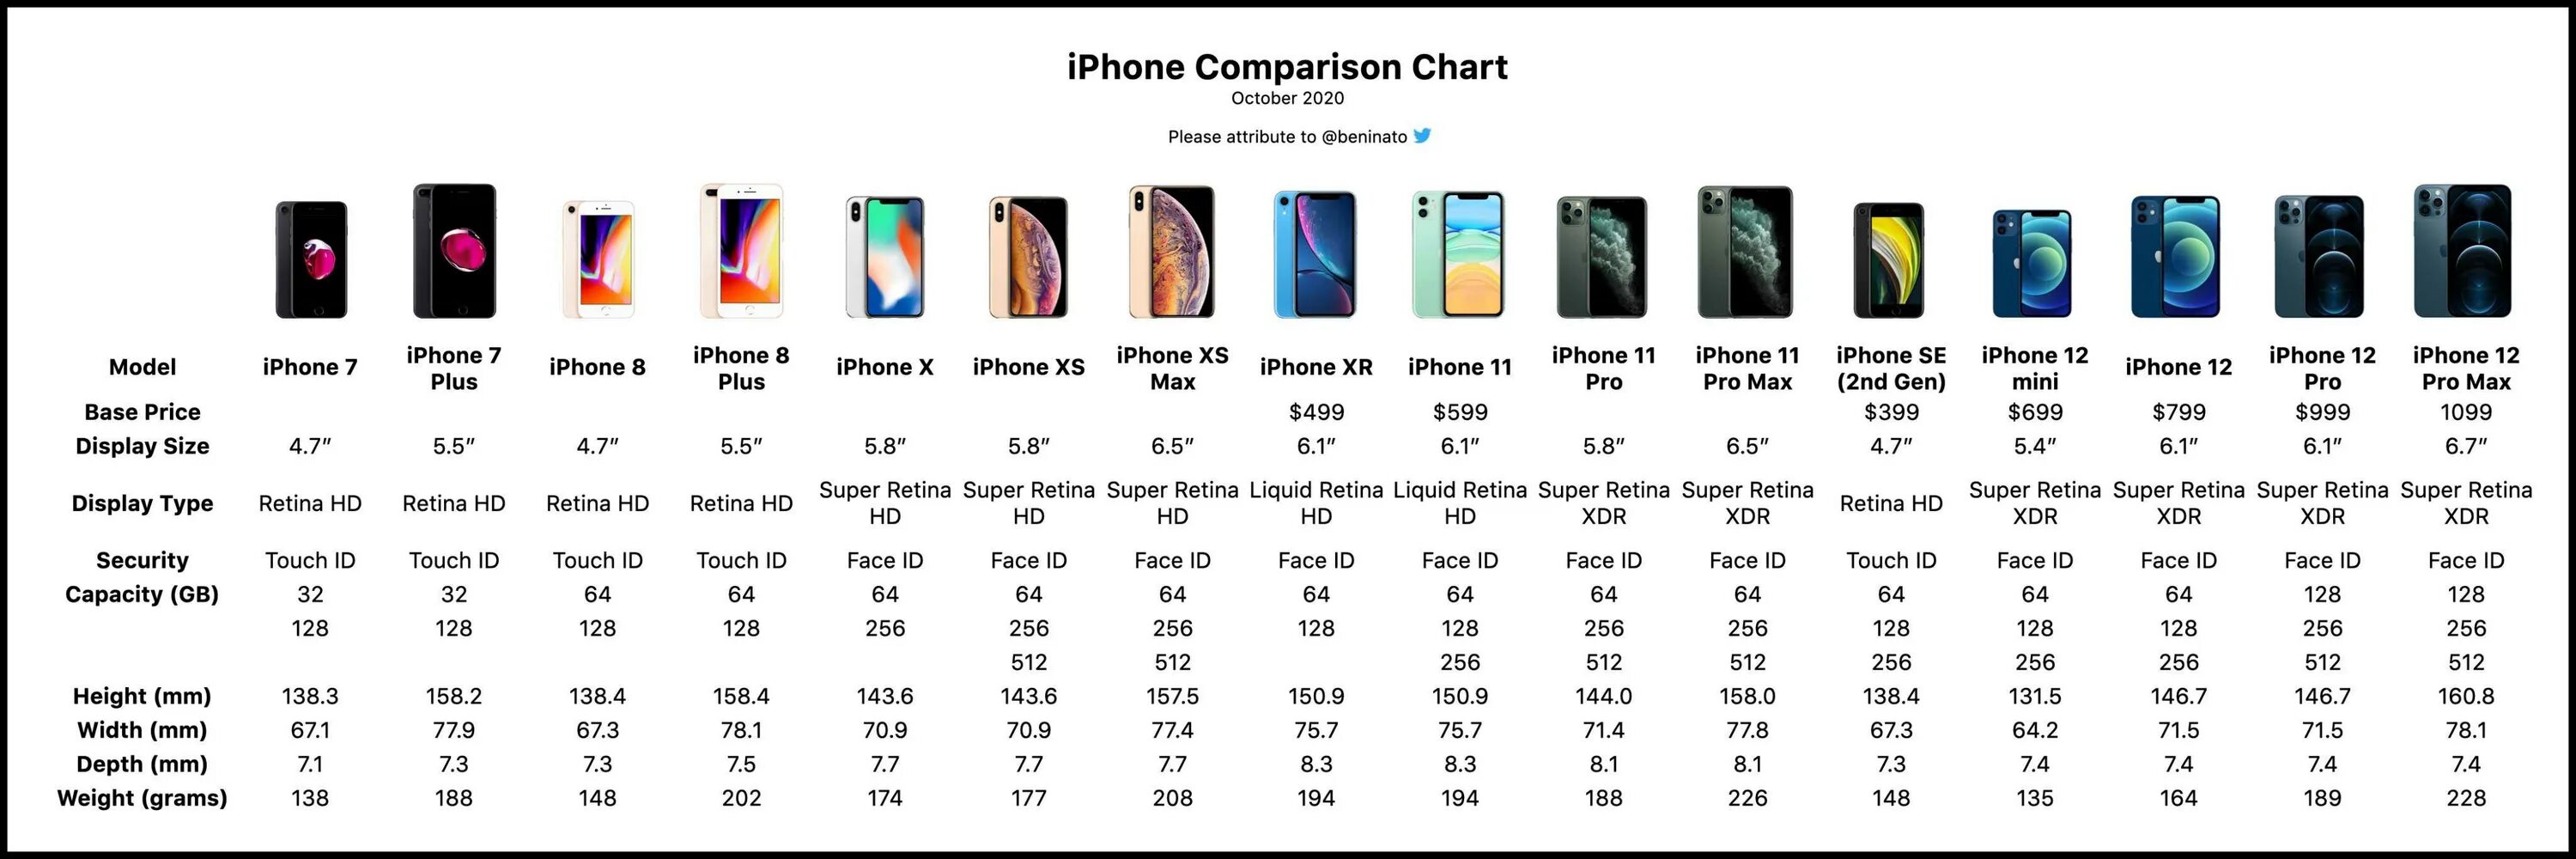 Размеры экранов айфонов